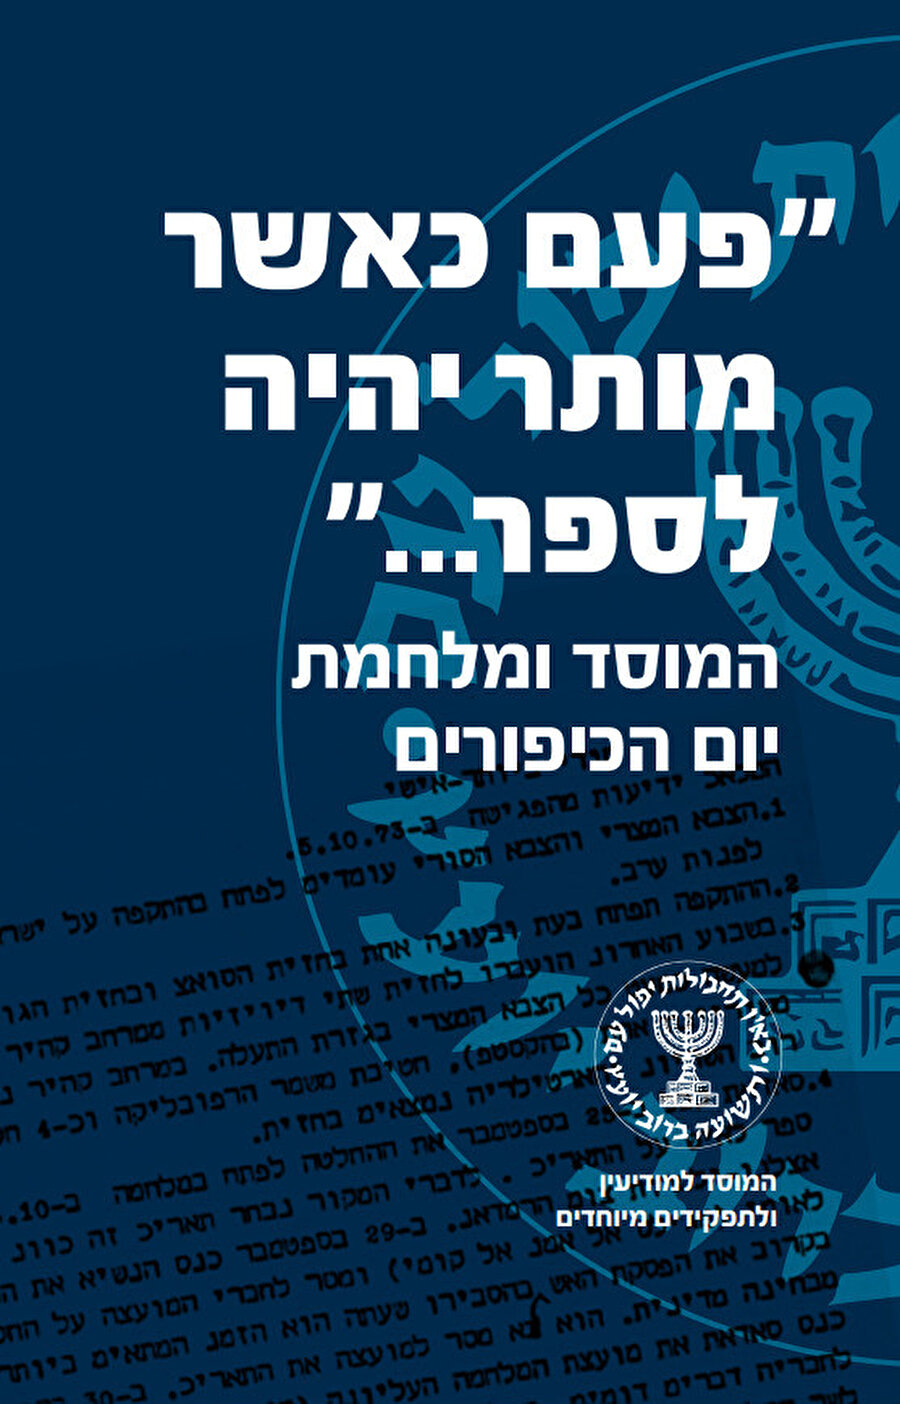 Mossad tarafından yayınlanan kitabın kapağı.